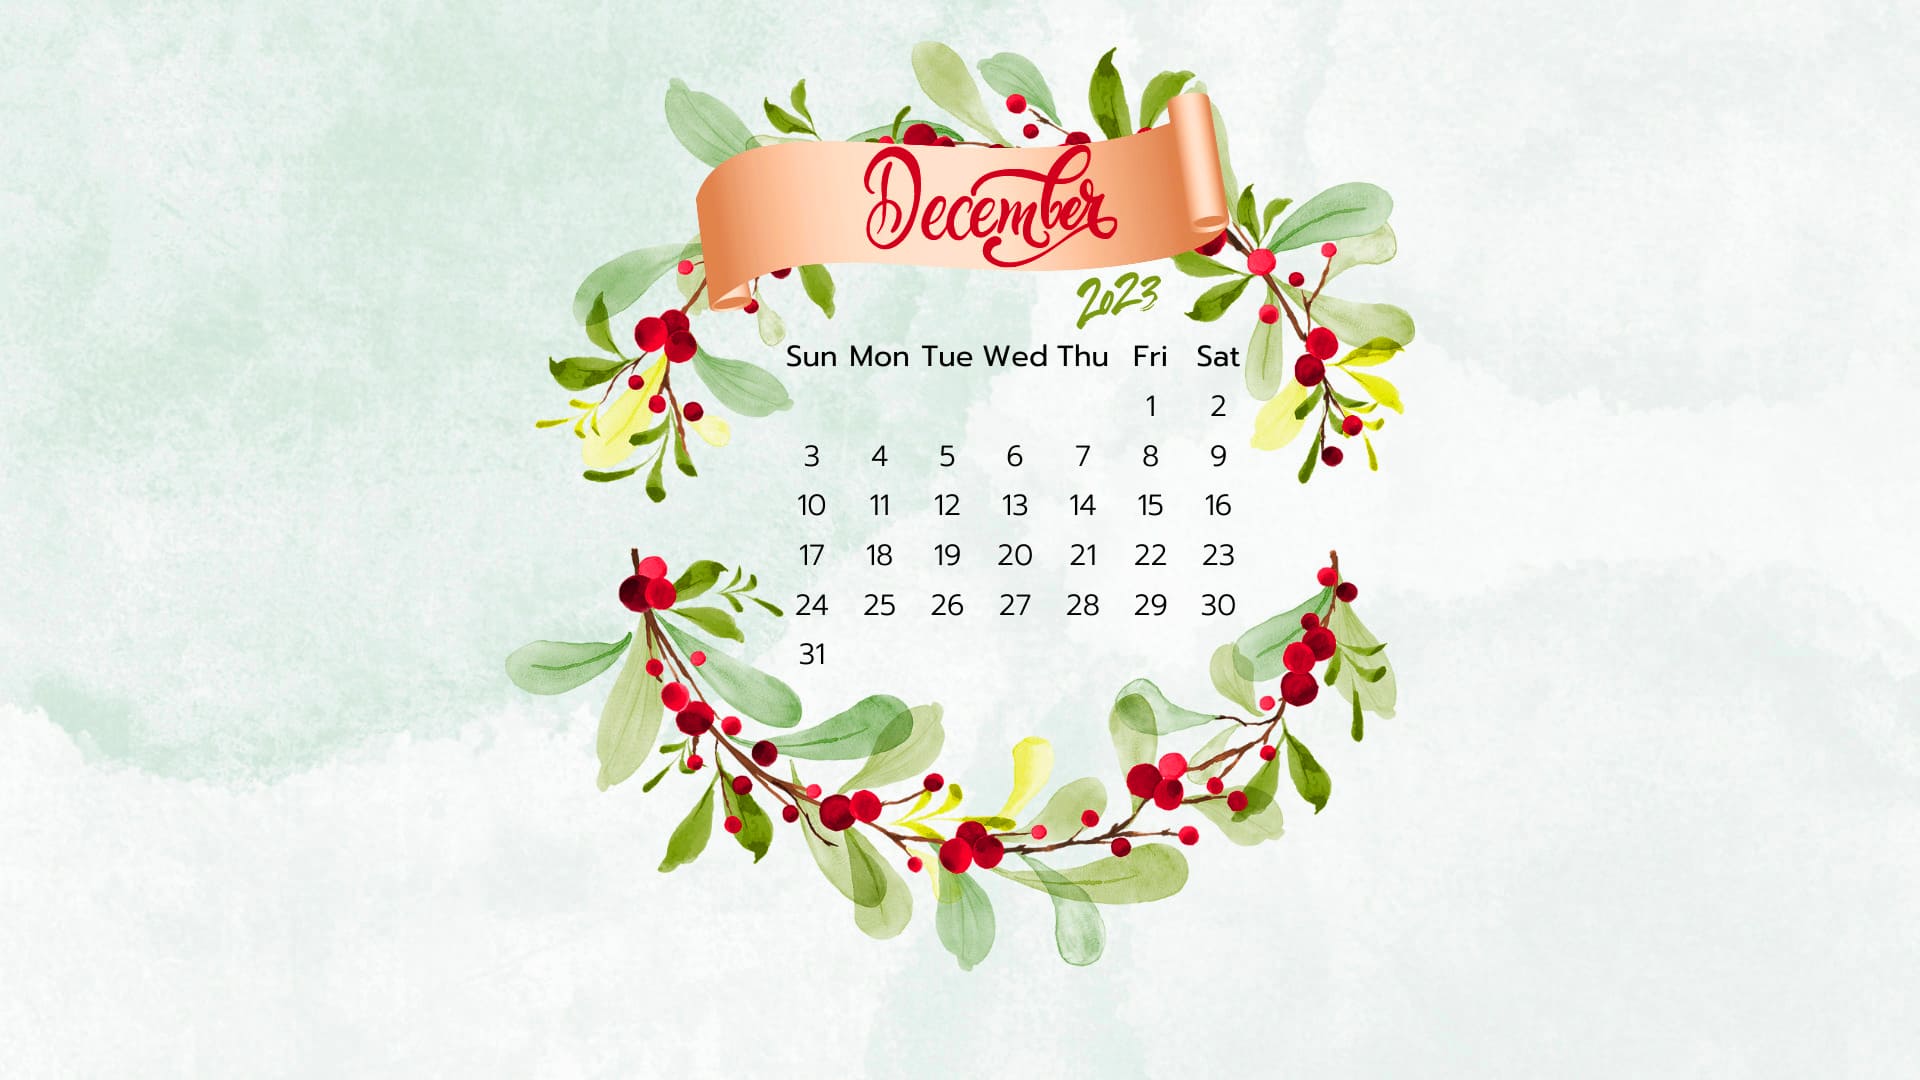 December 2023 Calendar Wallpapers